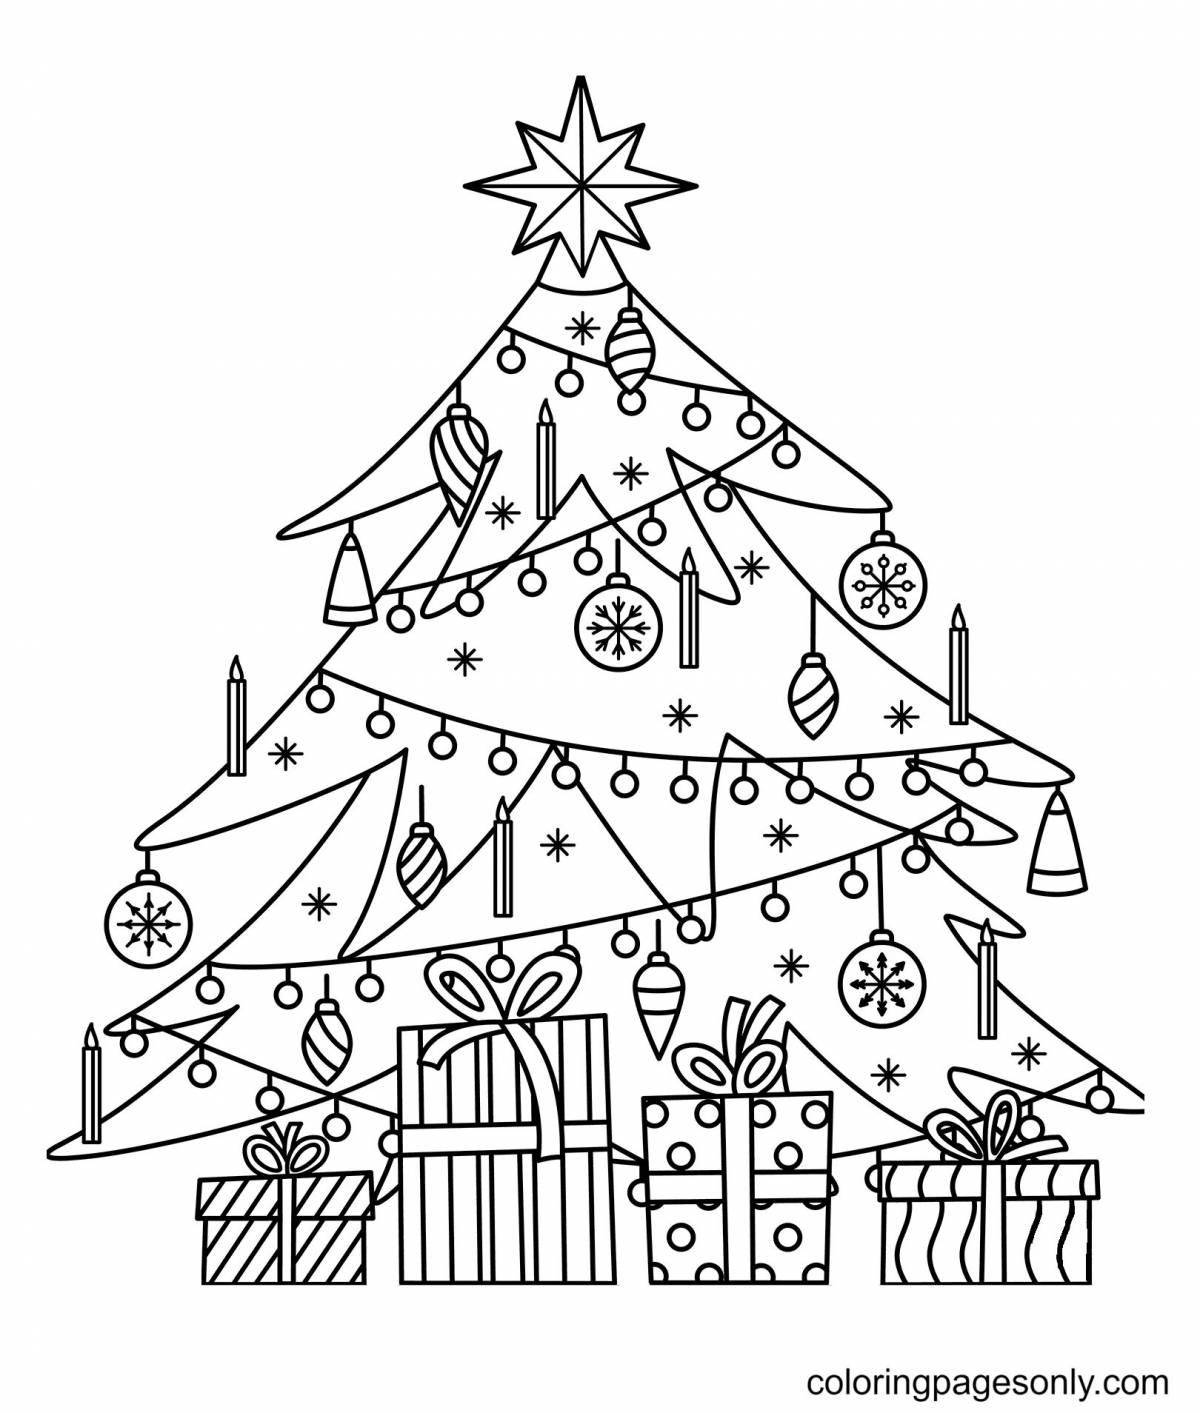 Раскраска радостная рождественская елка для детей 6-7 лет